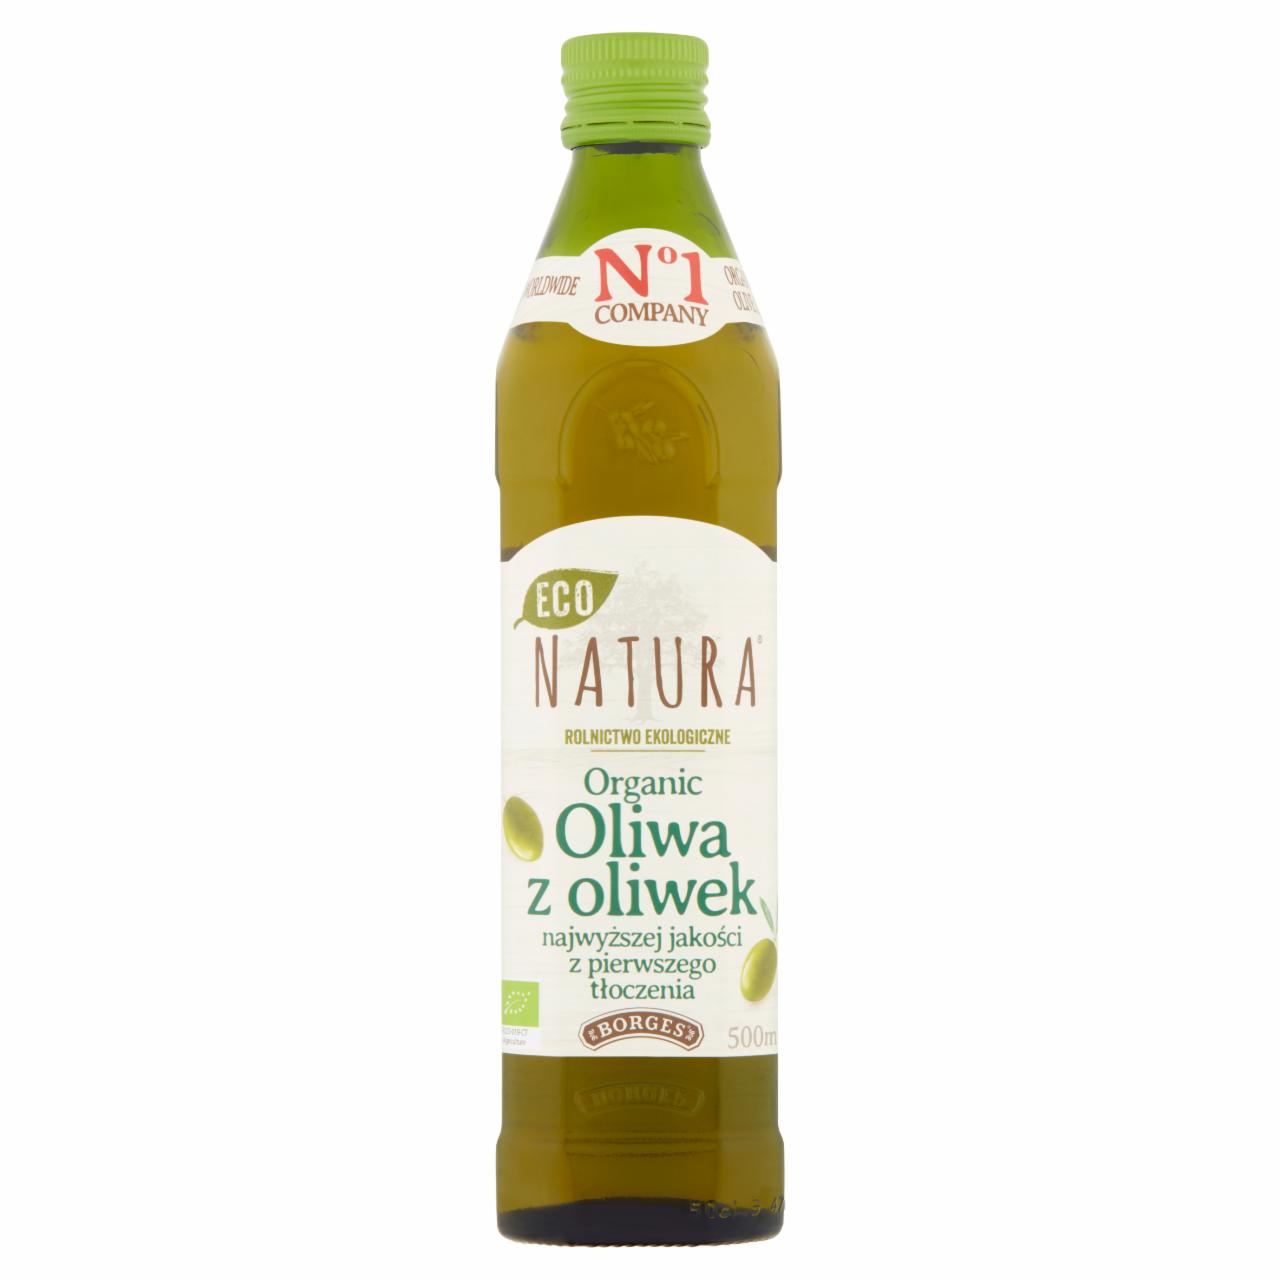 Zdjęcia - Borges Eco Natura Organic Oliwa z oliwek najwyższej jakości z pierwszego tłoczenia 500 ml